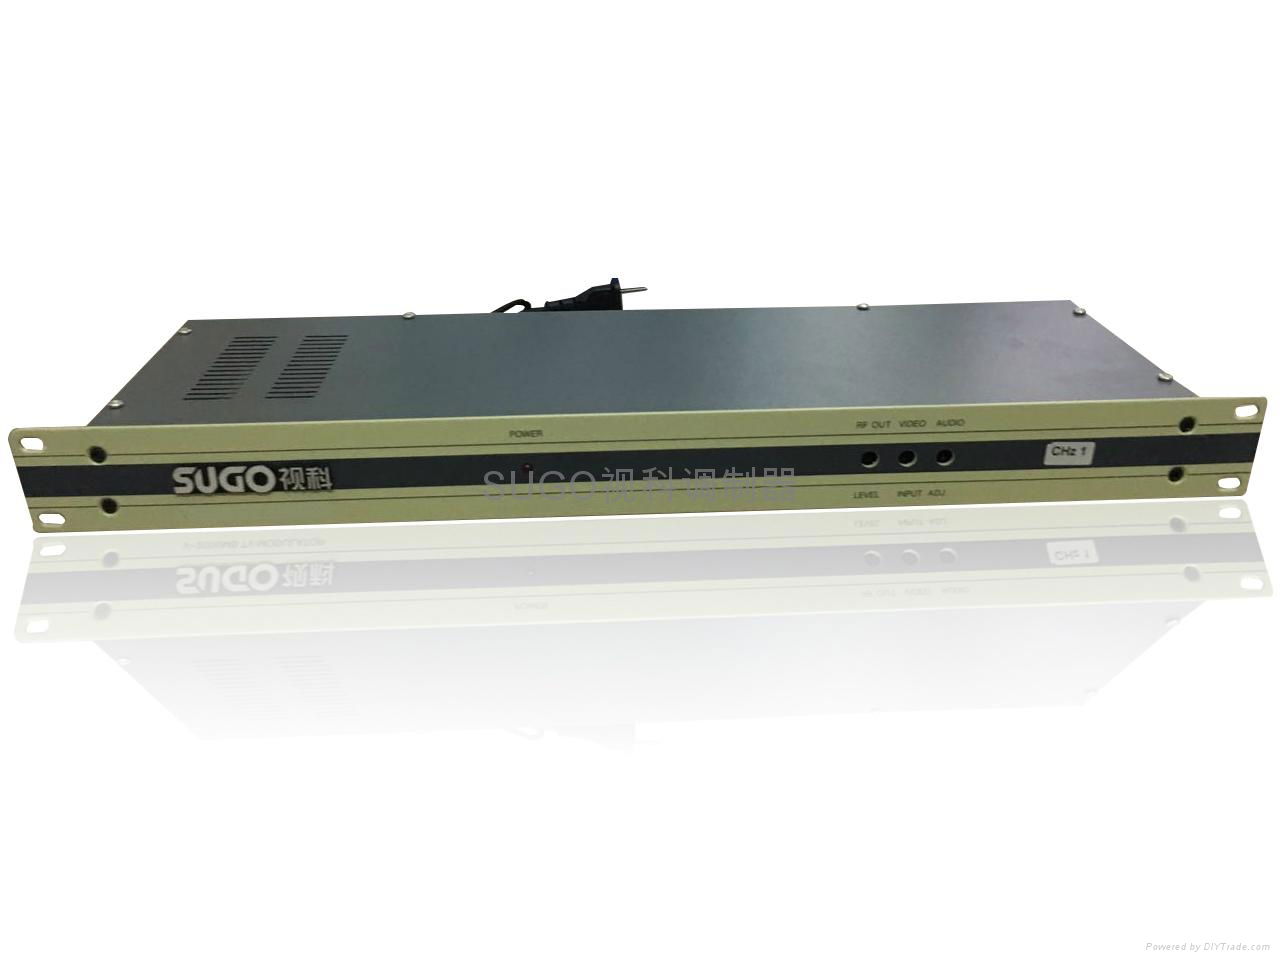 SUGO視科SG-V2000單路經濟型固定頻率調製器 4